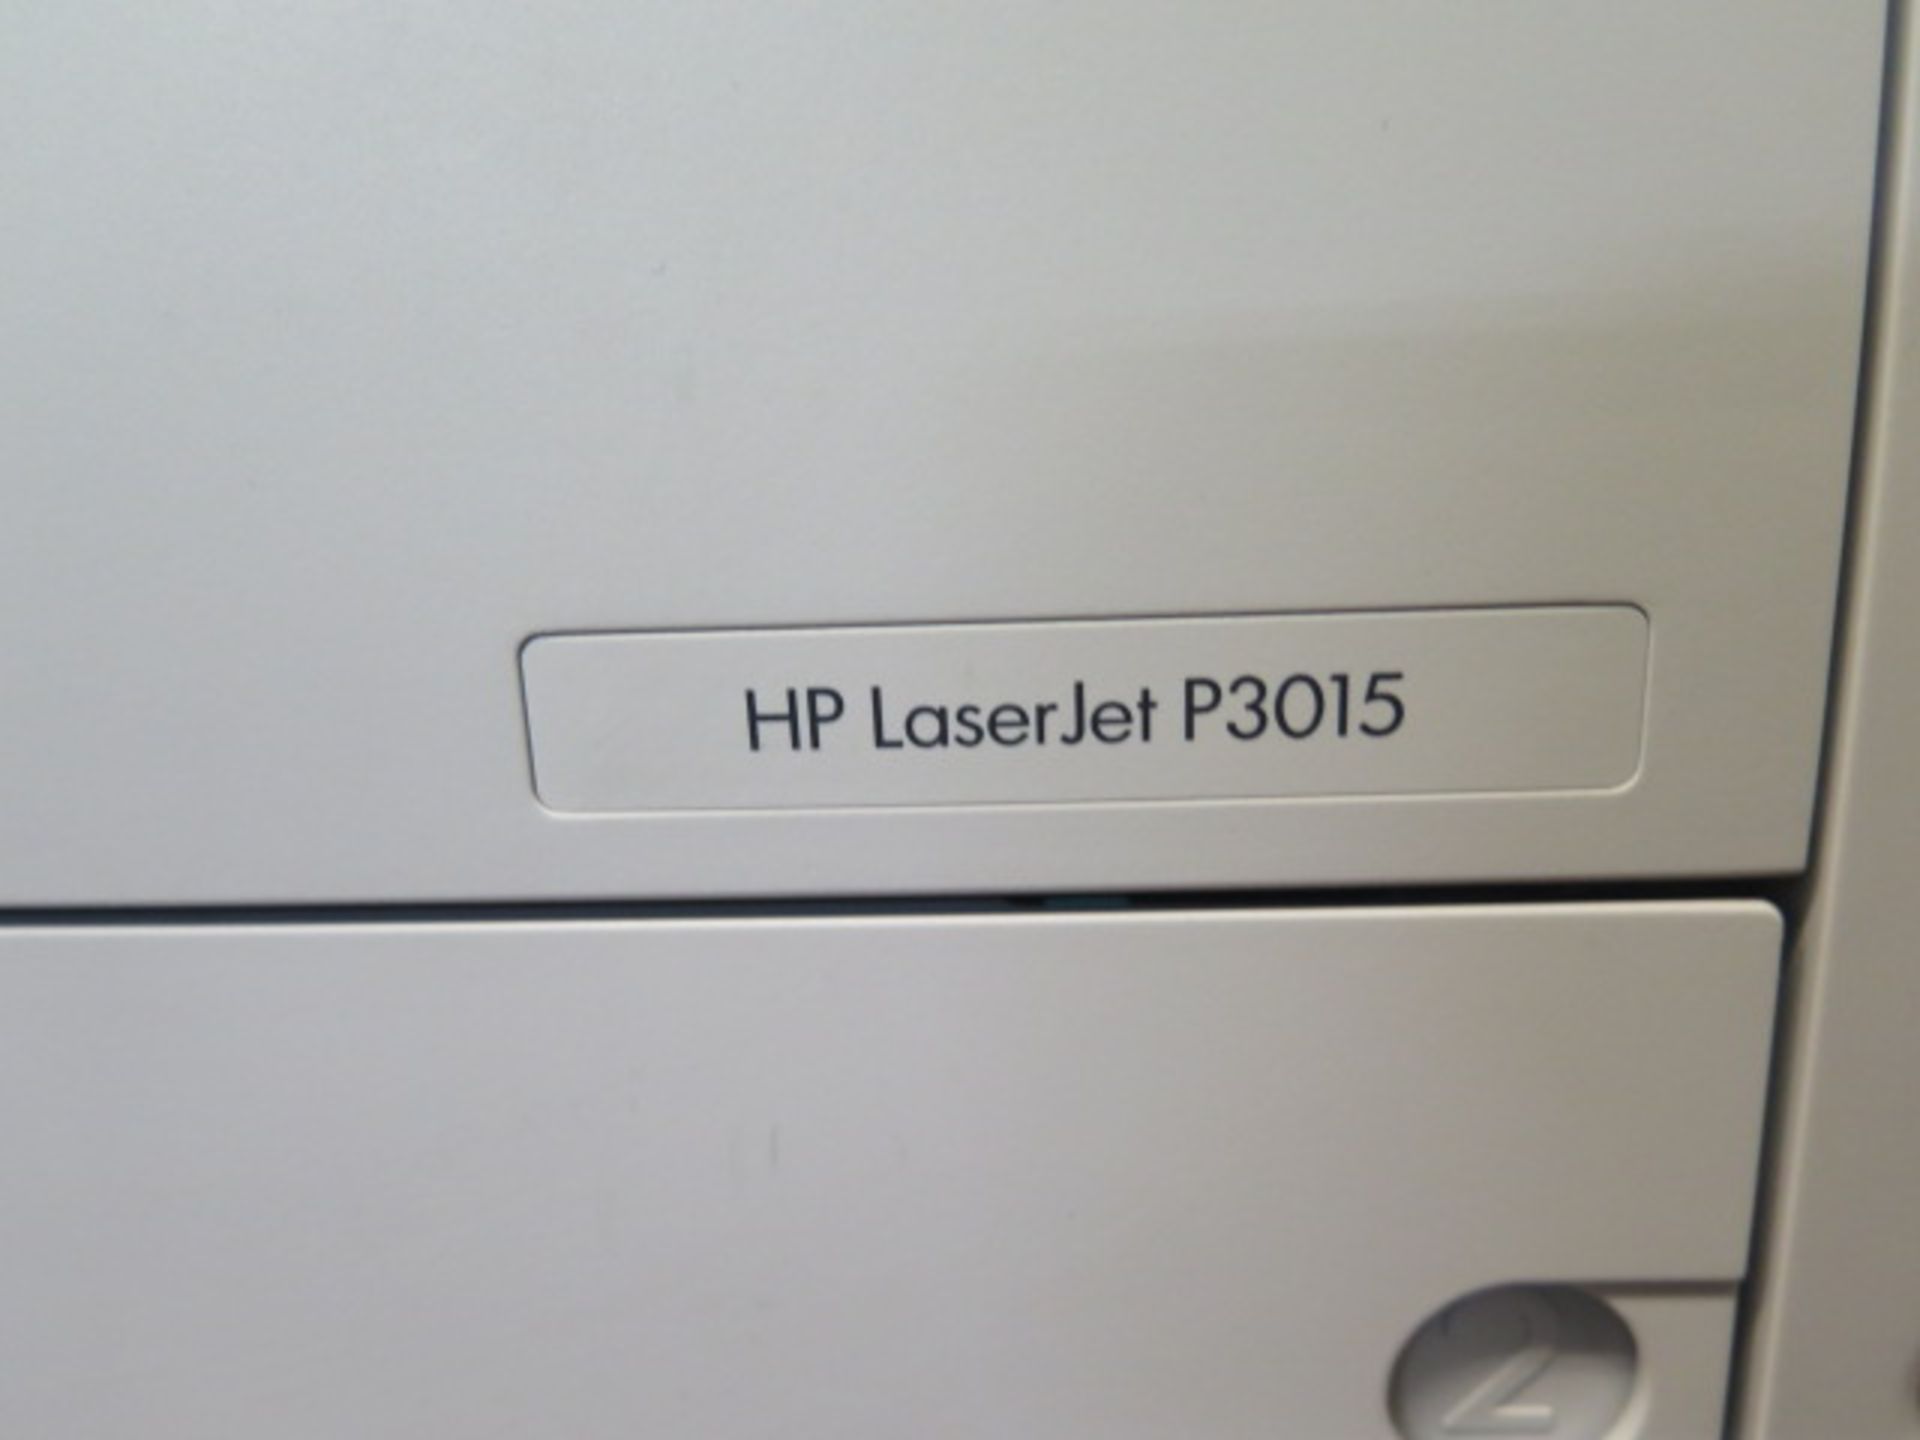 Hewlett Packard Laserjet P3015 Office Printers (7) (SOLD AS-IS - NO WARRANTY) - Image 6 of 10